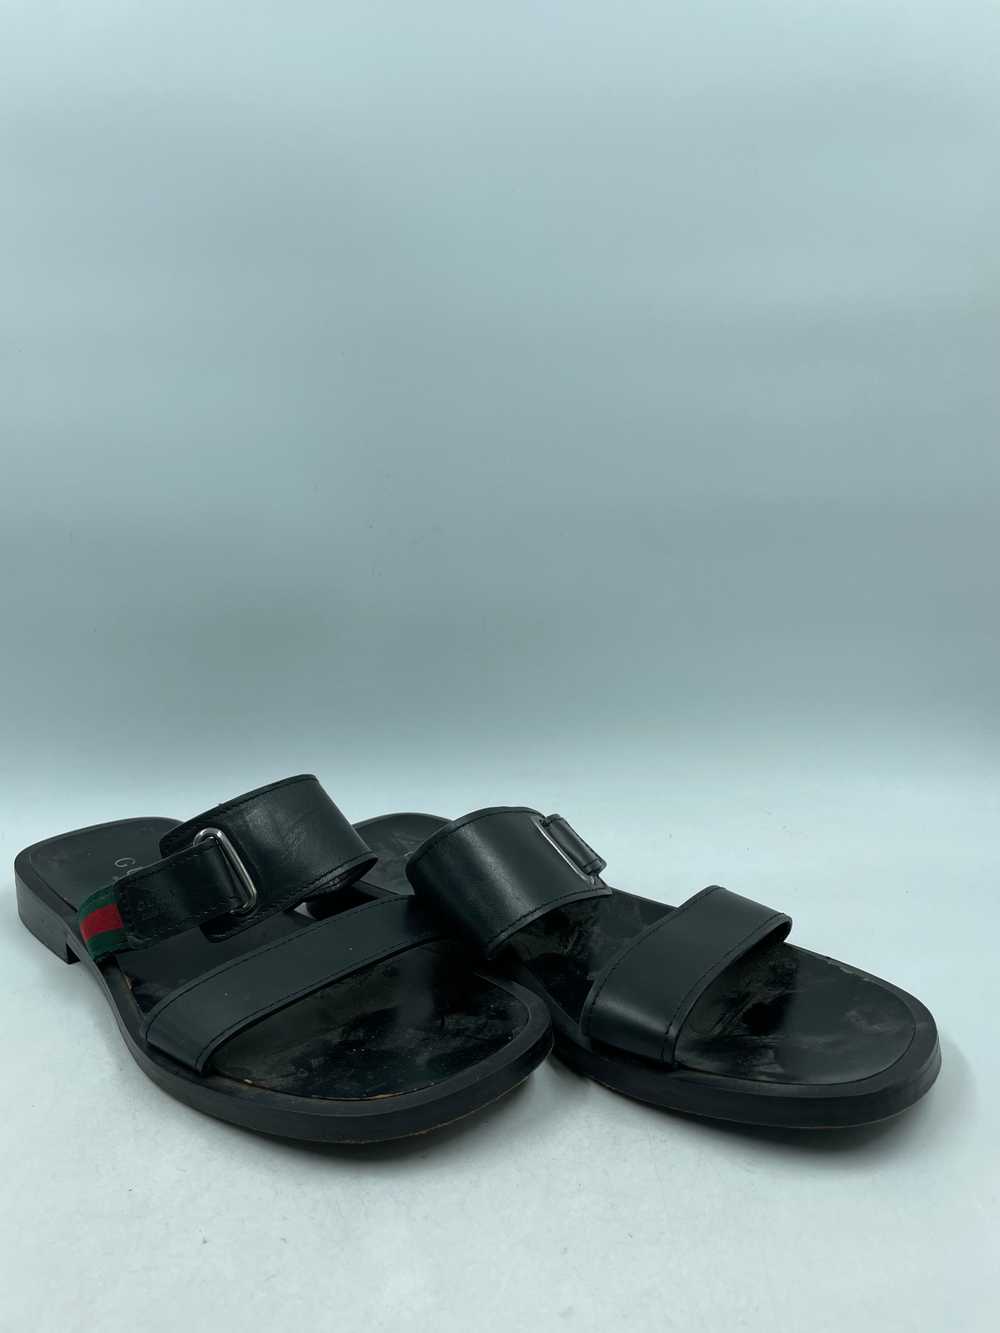 Authentic Gucci Black Leather Sandals M 10.5D - image 3